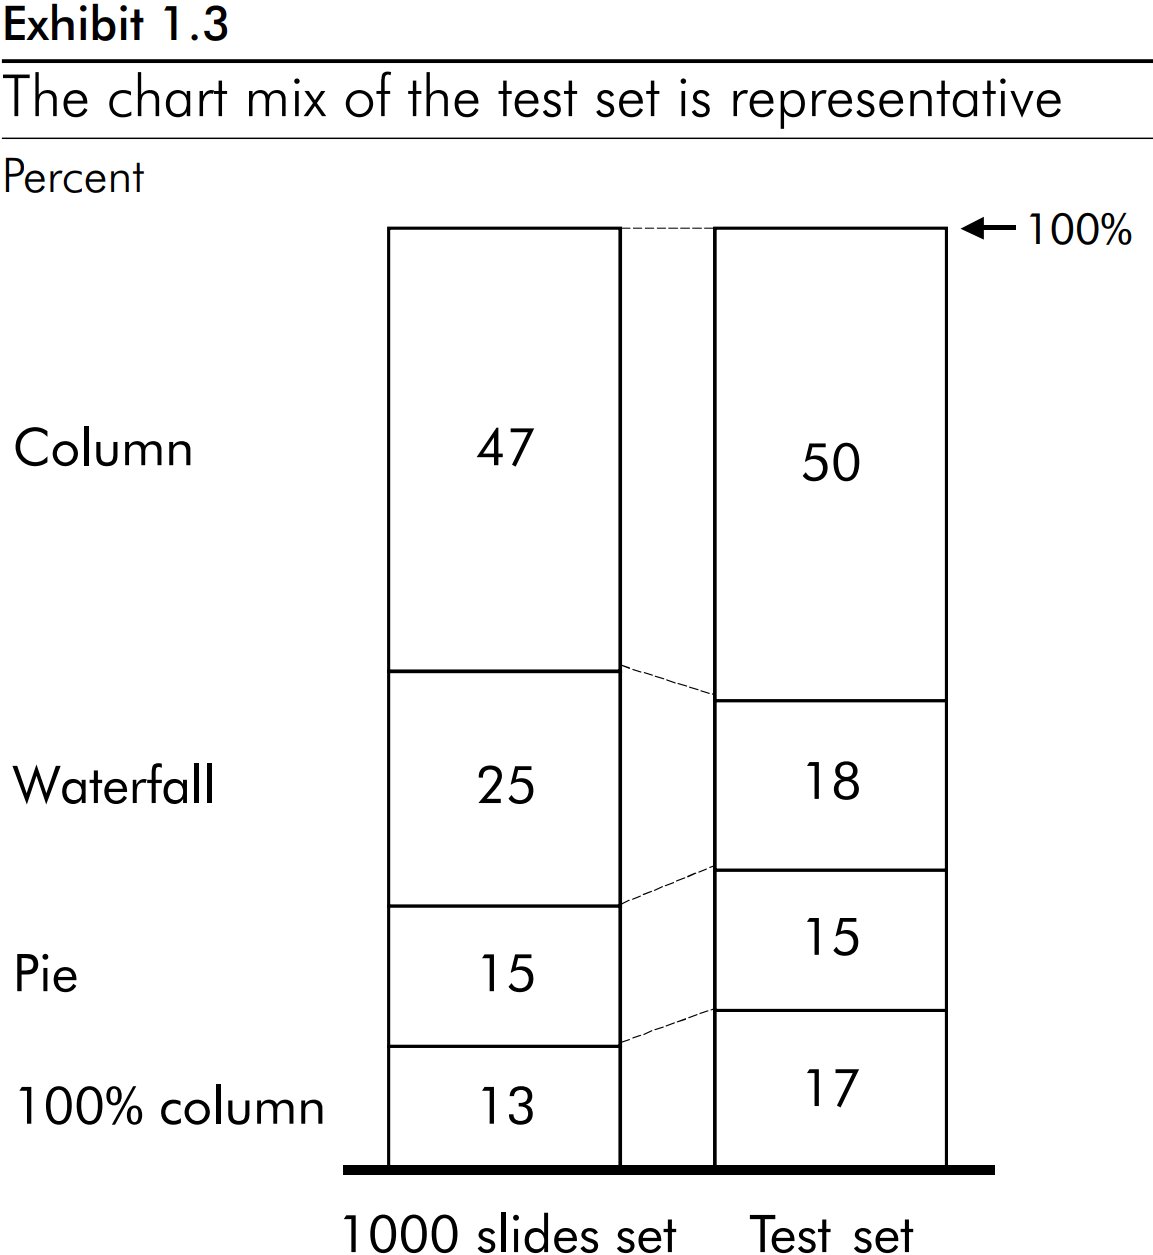 以下堆积柱形图显示出测试的图表组合具有代表性.